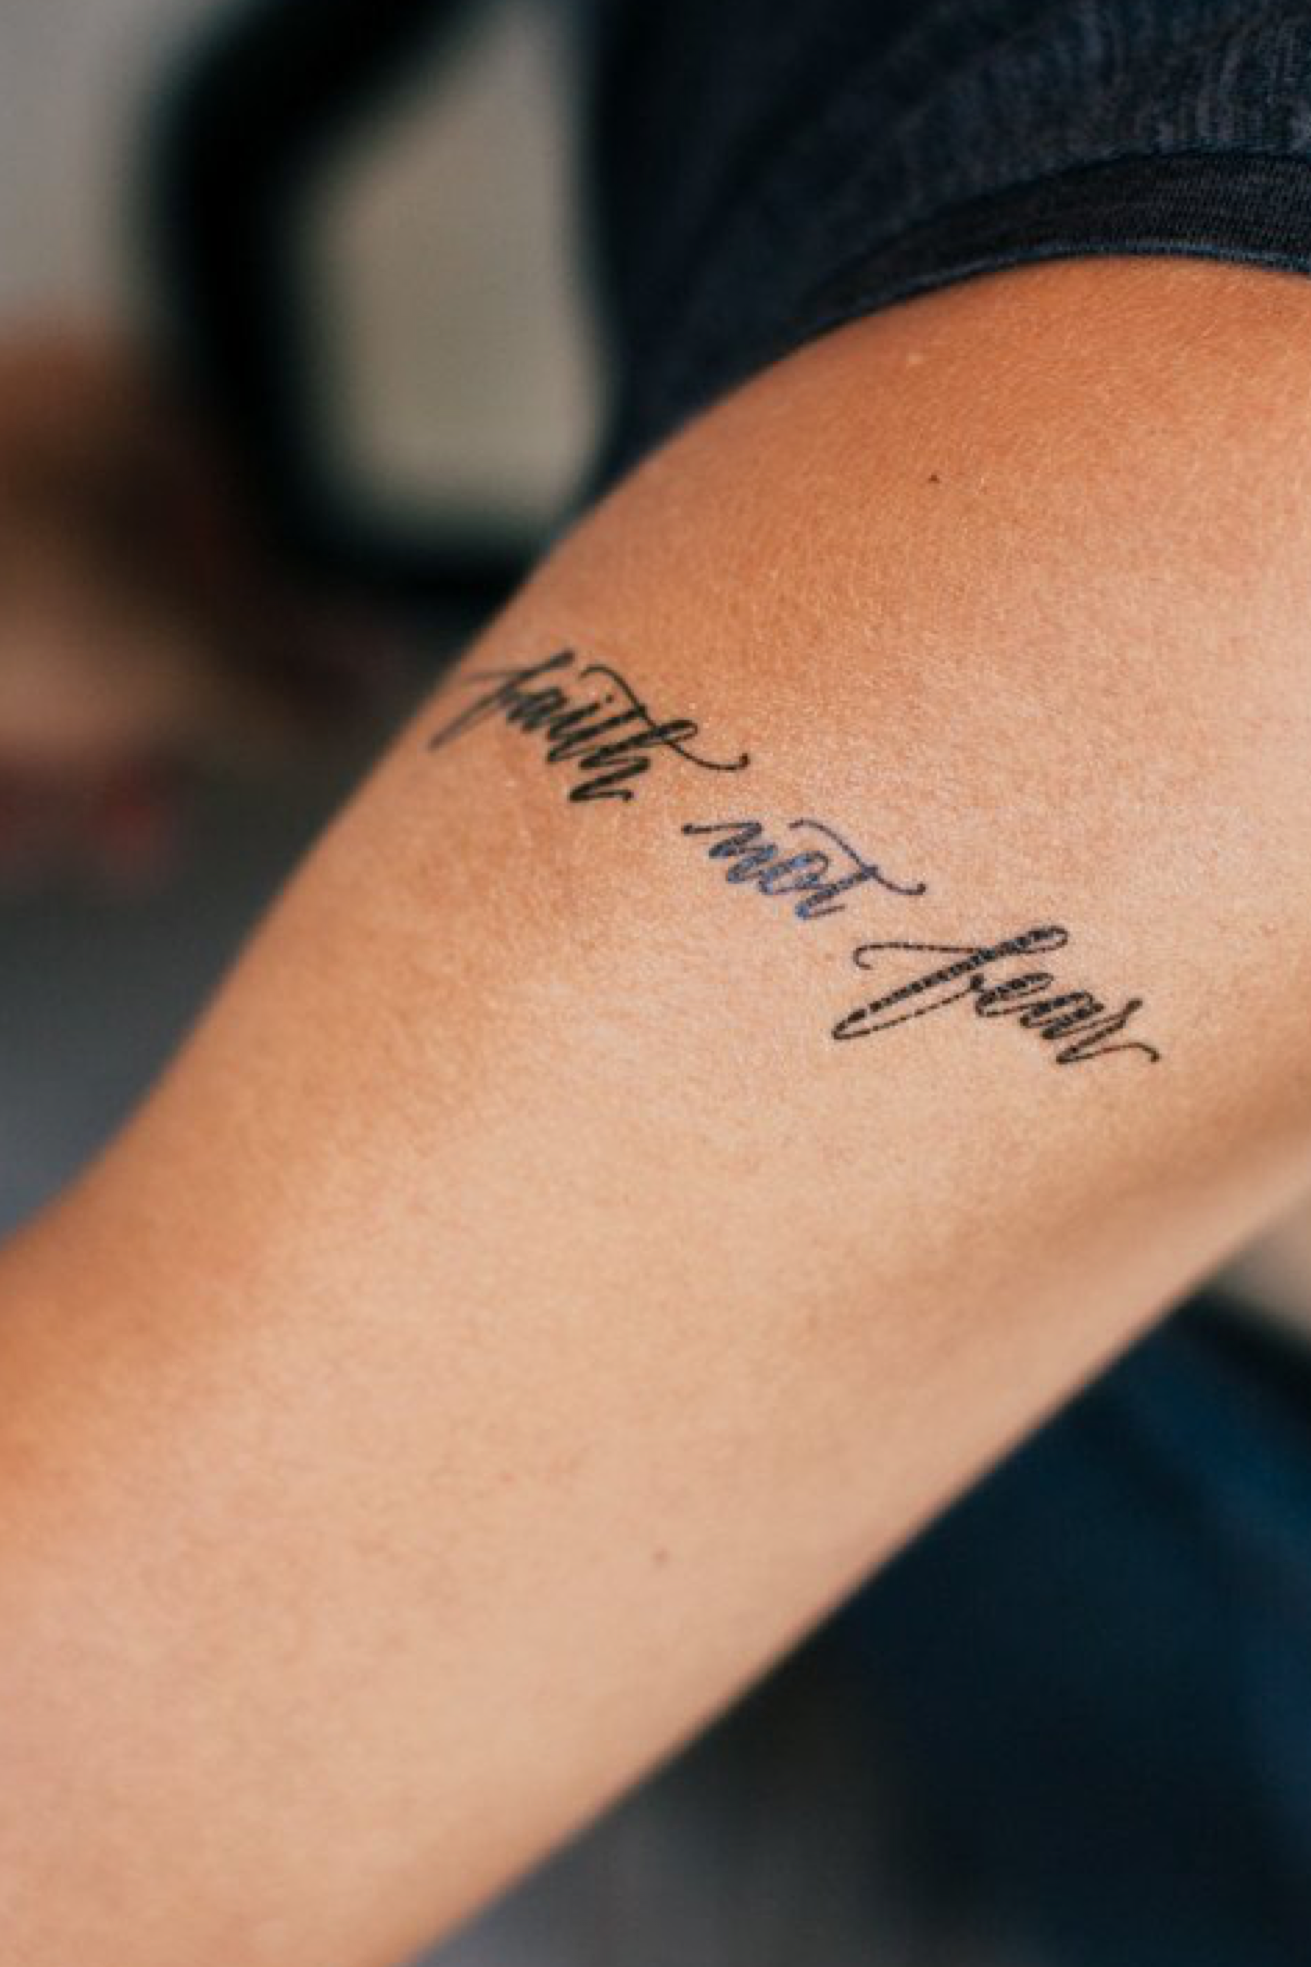 Buy Faith Over Fear Temporary Tattoo Christian Tattoo Faith Online in India   Etsy